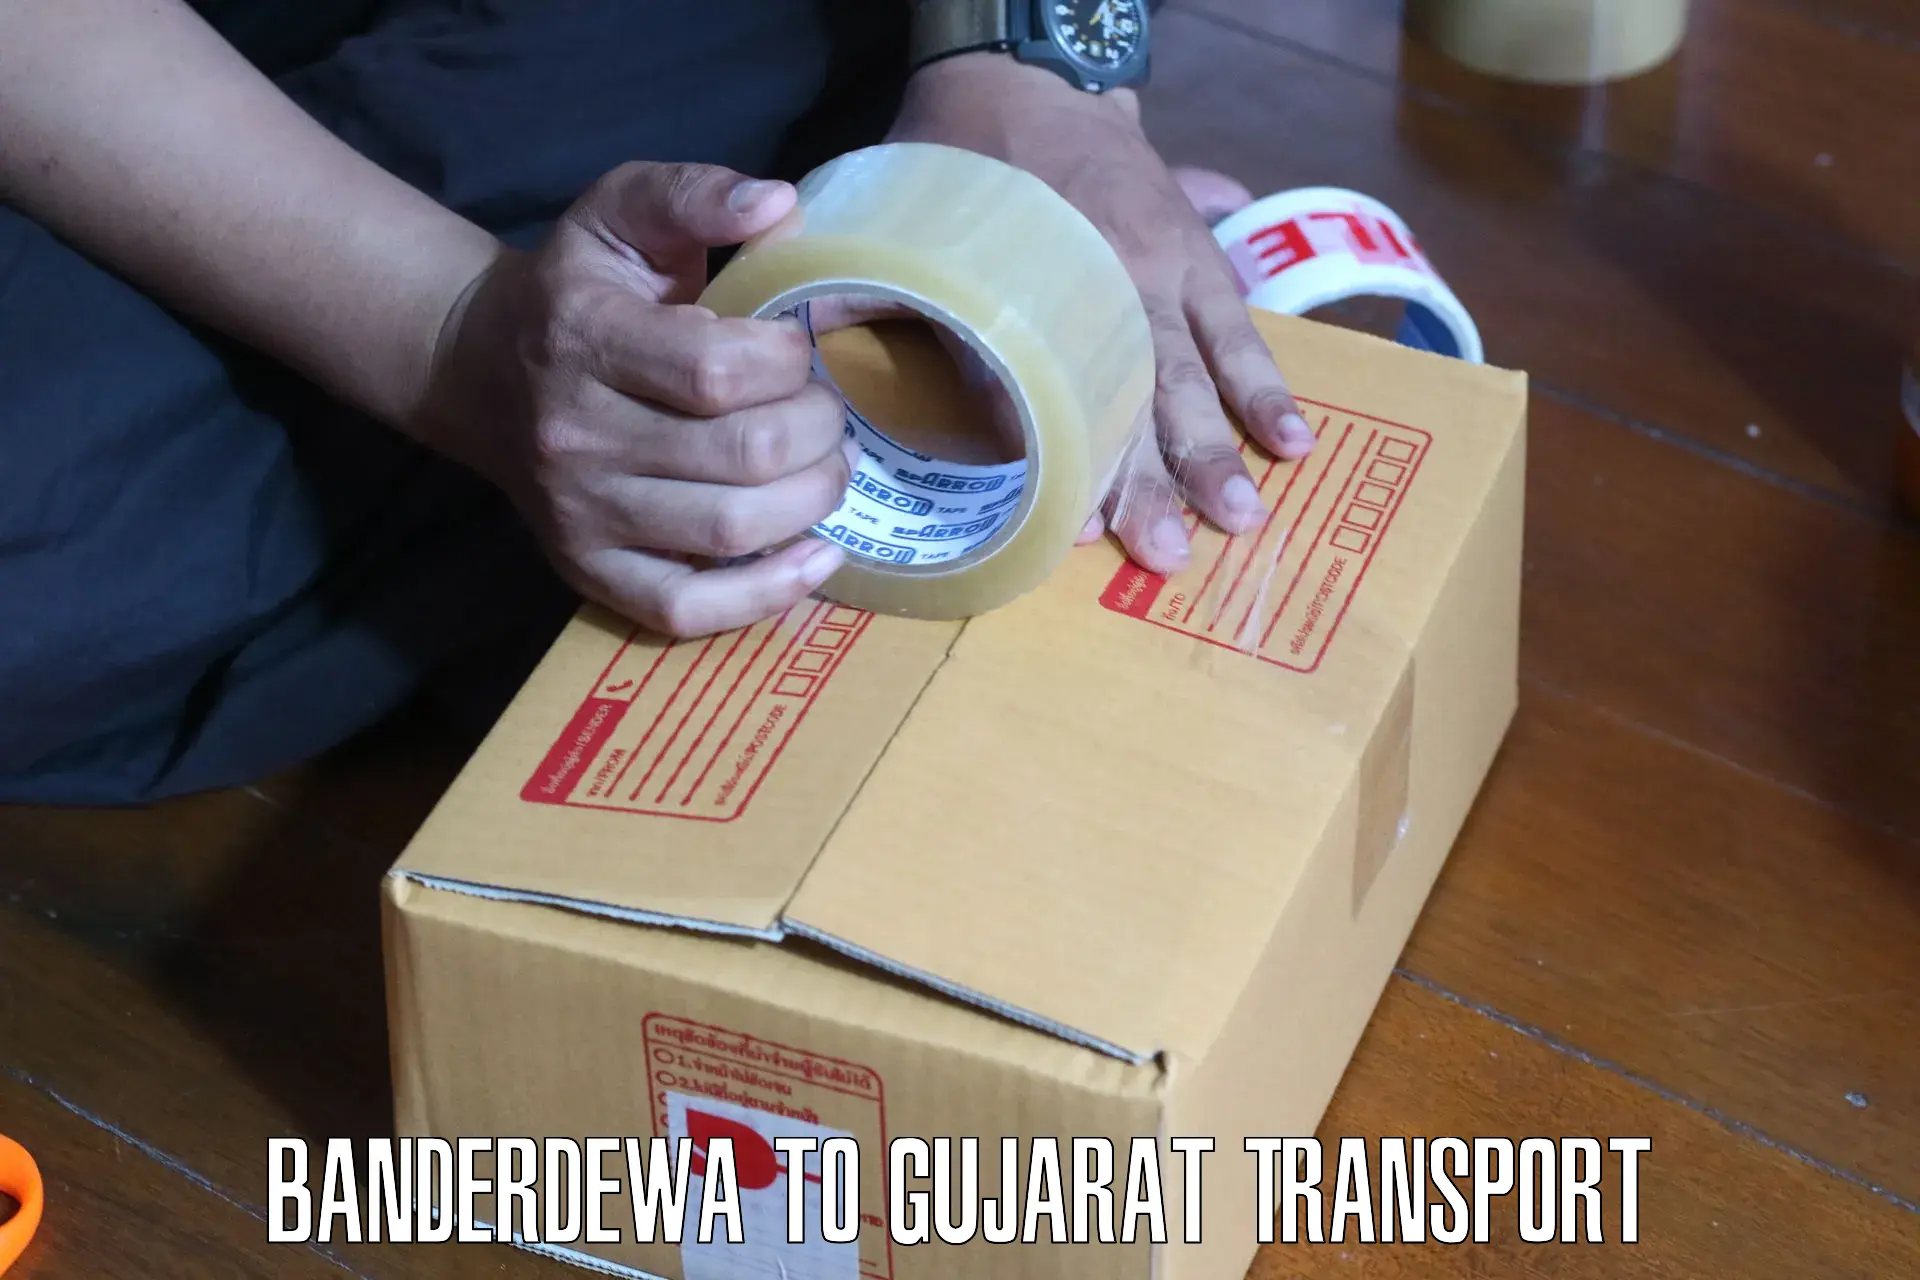 Material transport services Banderdewa to Rumkitalav